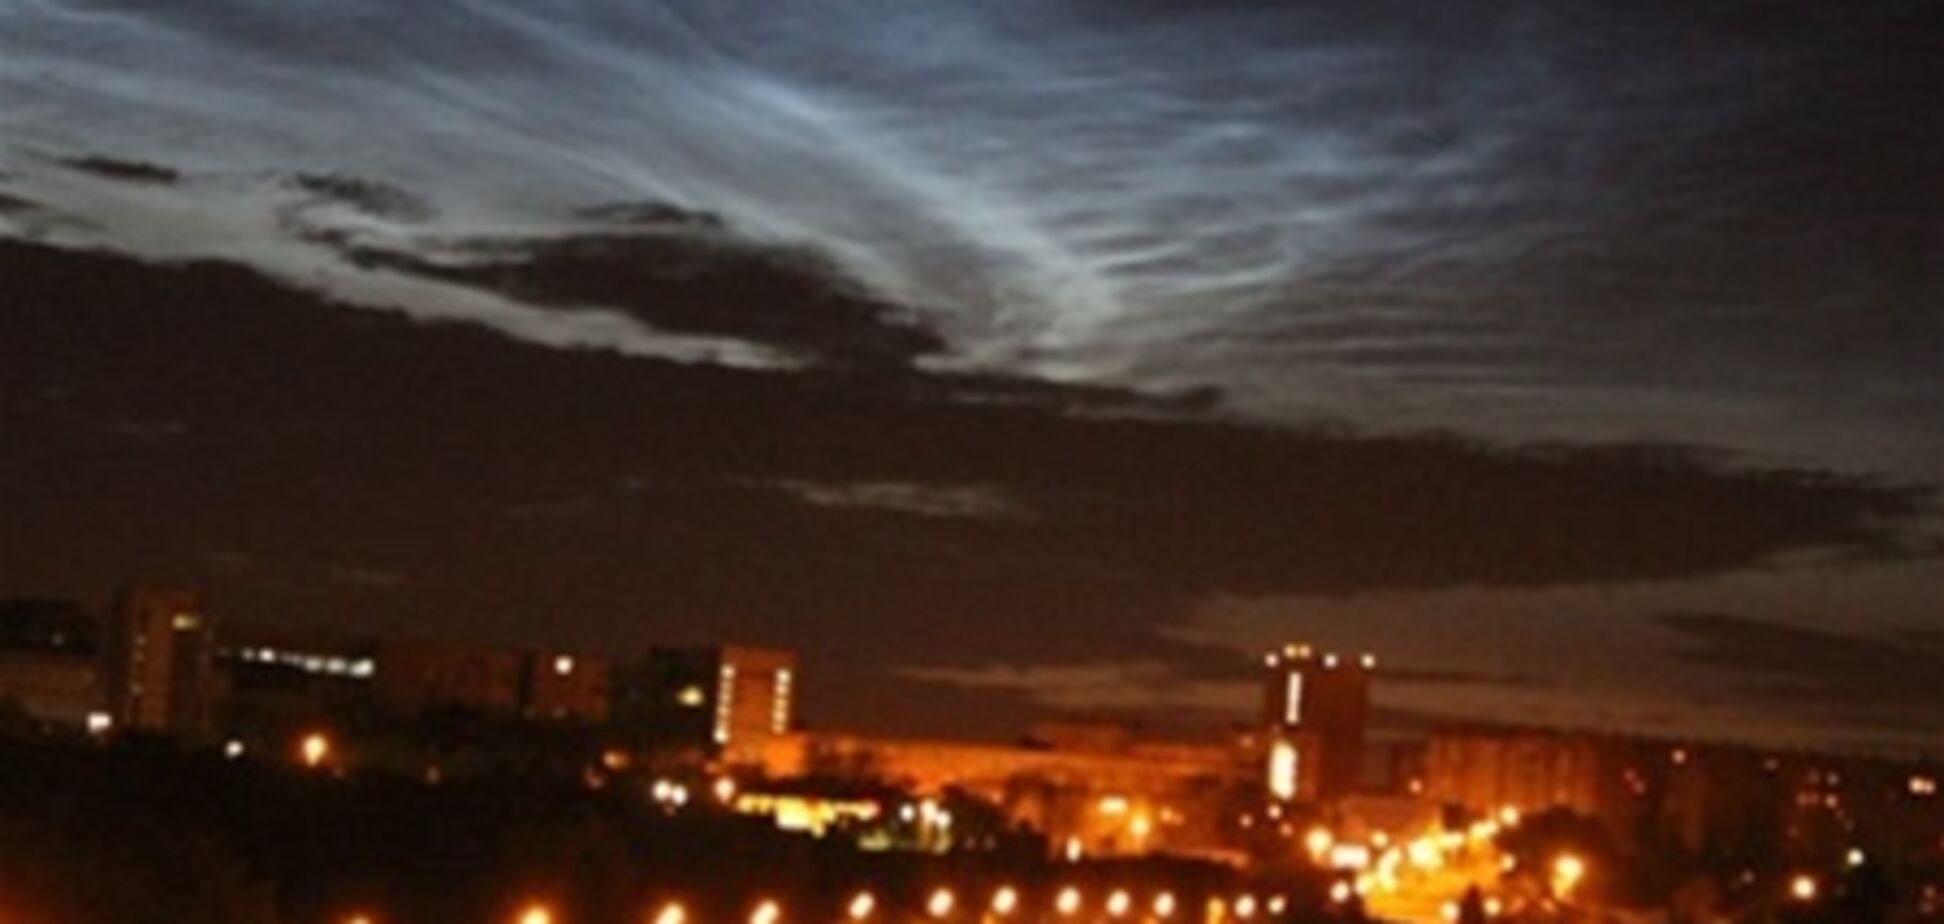 В небе над Челябинском наблюдали аномальное сияние, 16 июня 2013